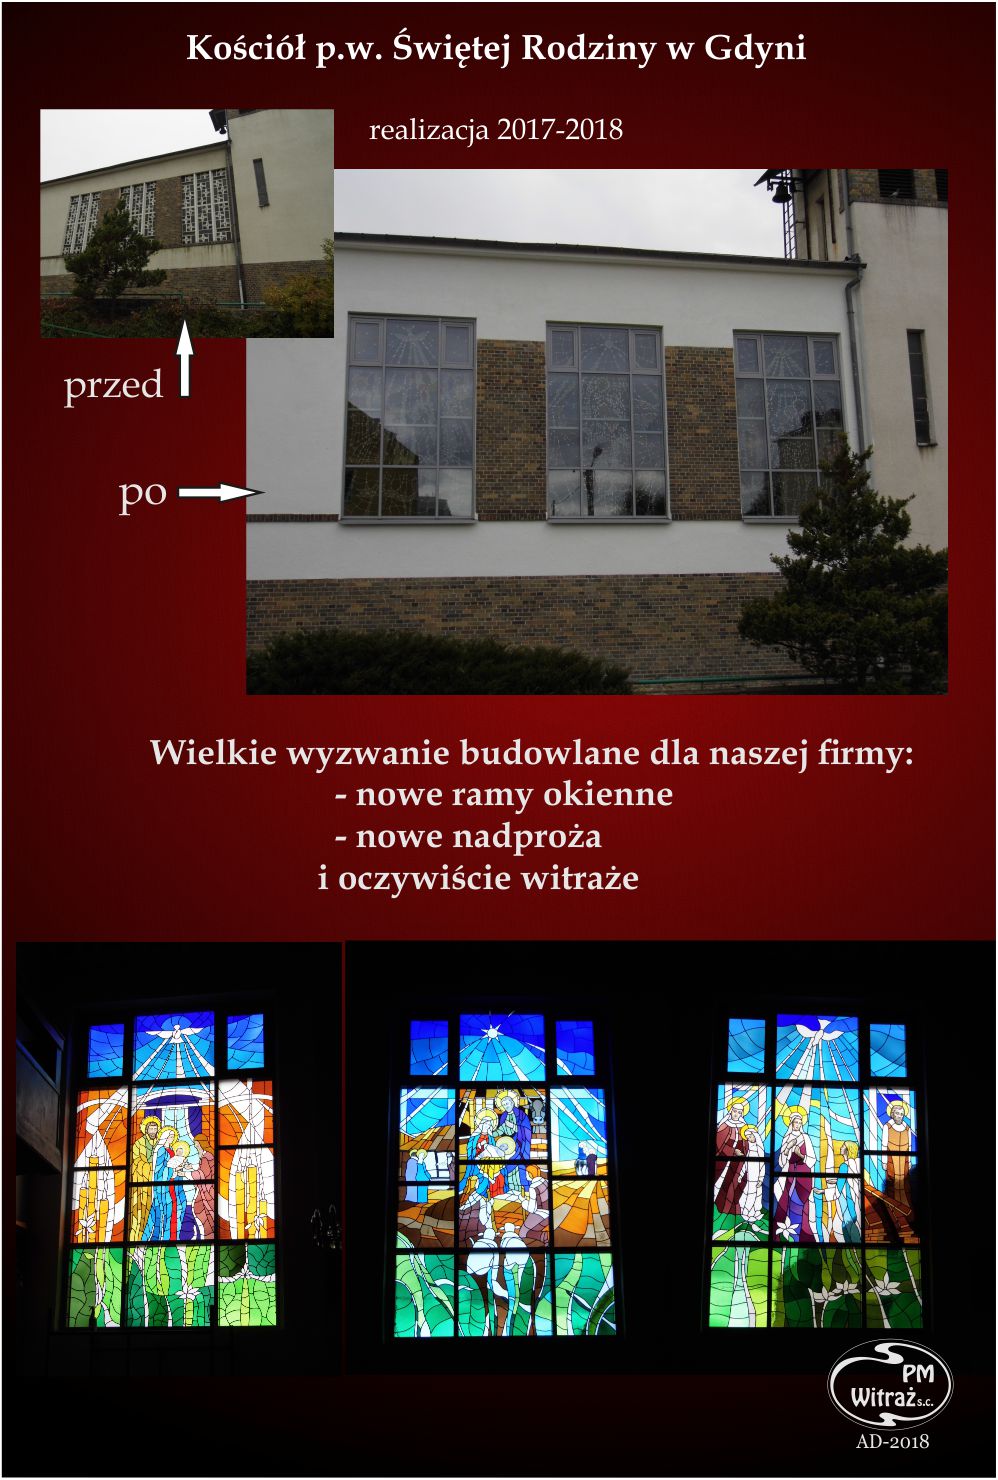 kościół pw.Świętej Rodziny PM-Witraż m